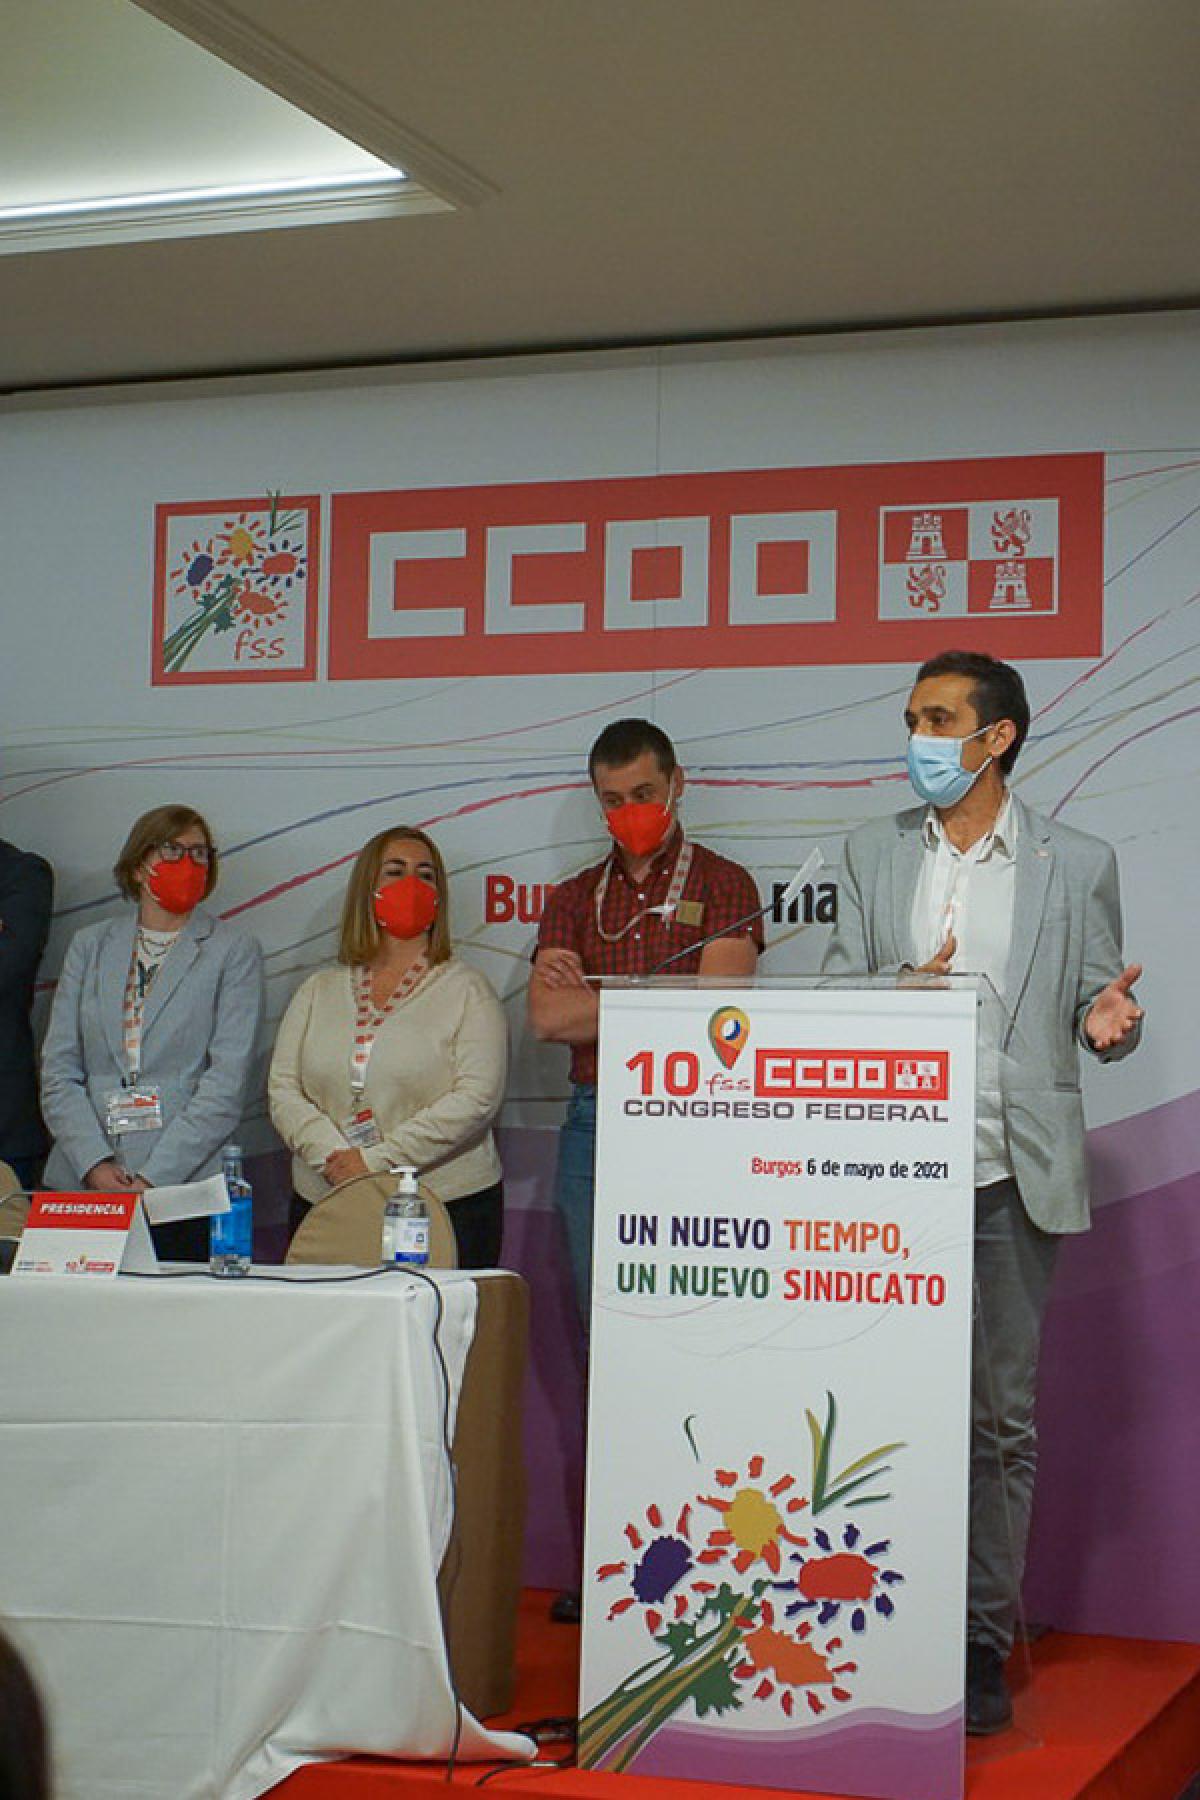 Galería de imágenes del 10º Congreso de la Federación de Sanidad y Sectores Sociosanitarios de CCOO Castilla y León